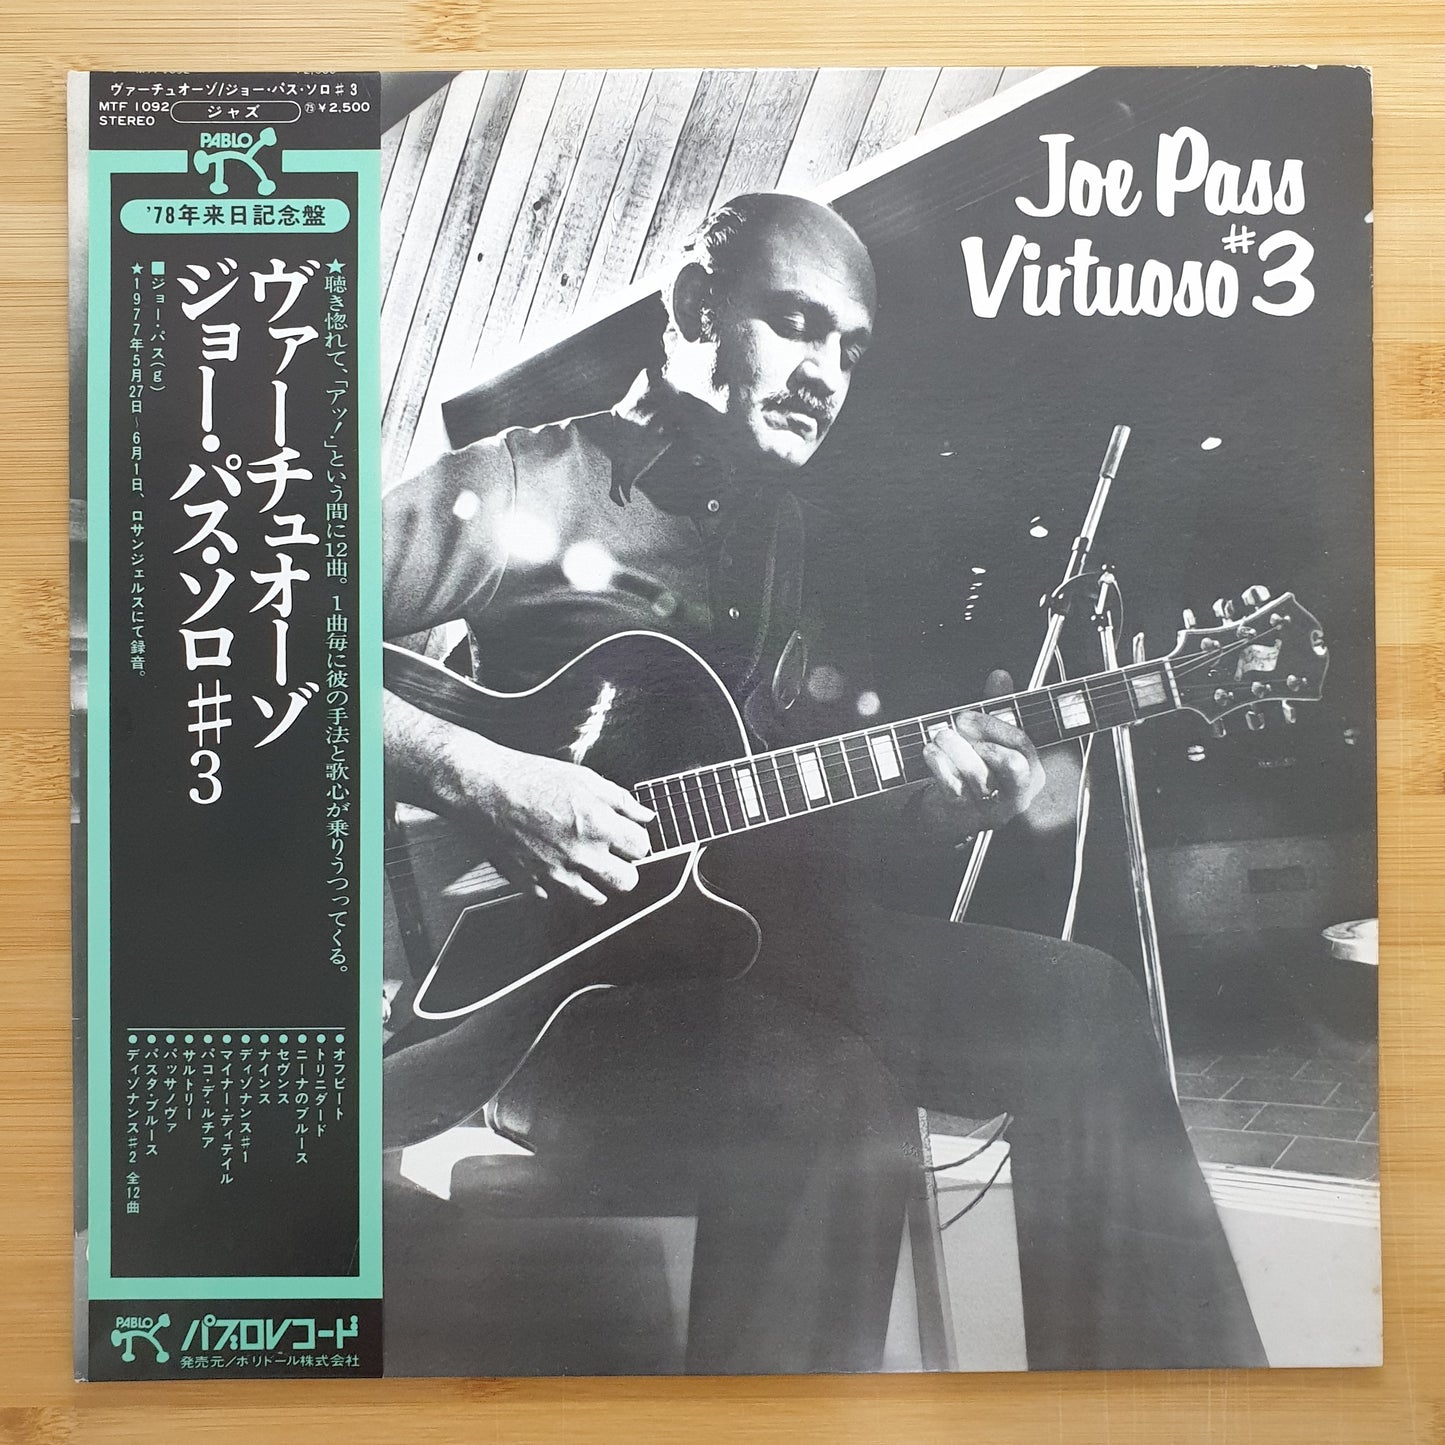 Joe Pass - Virtuoso #3